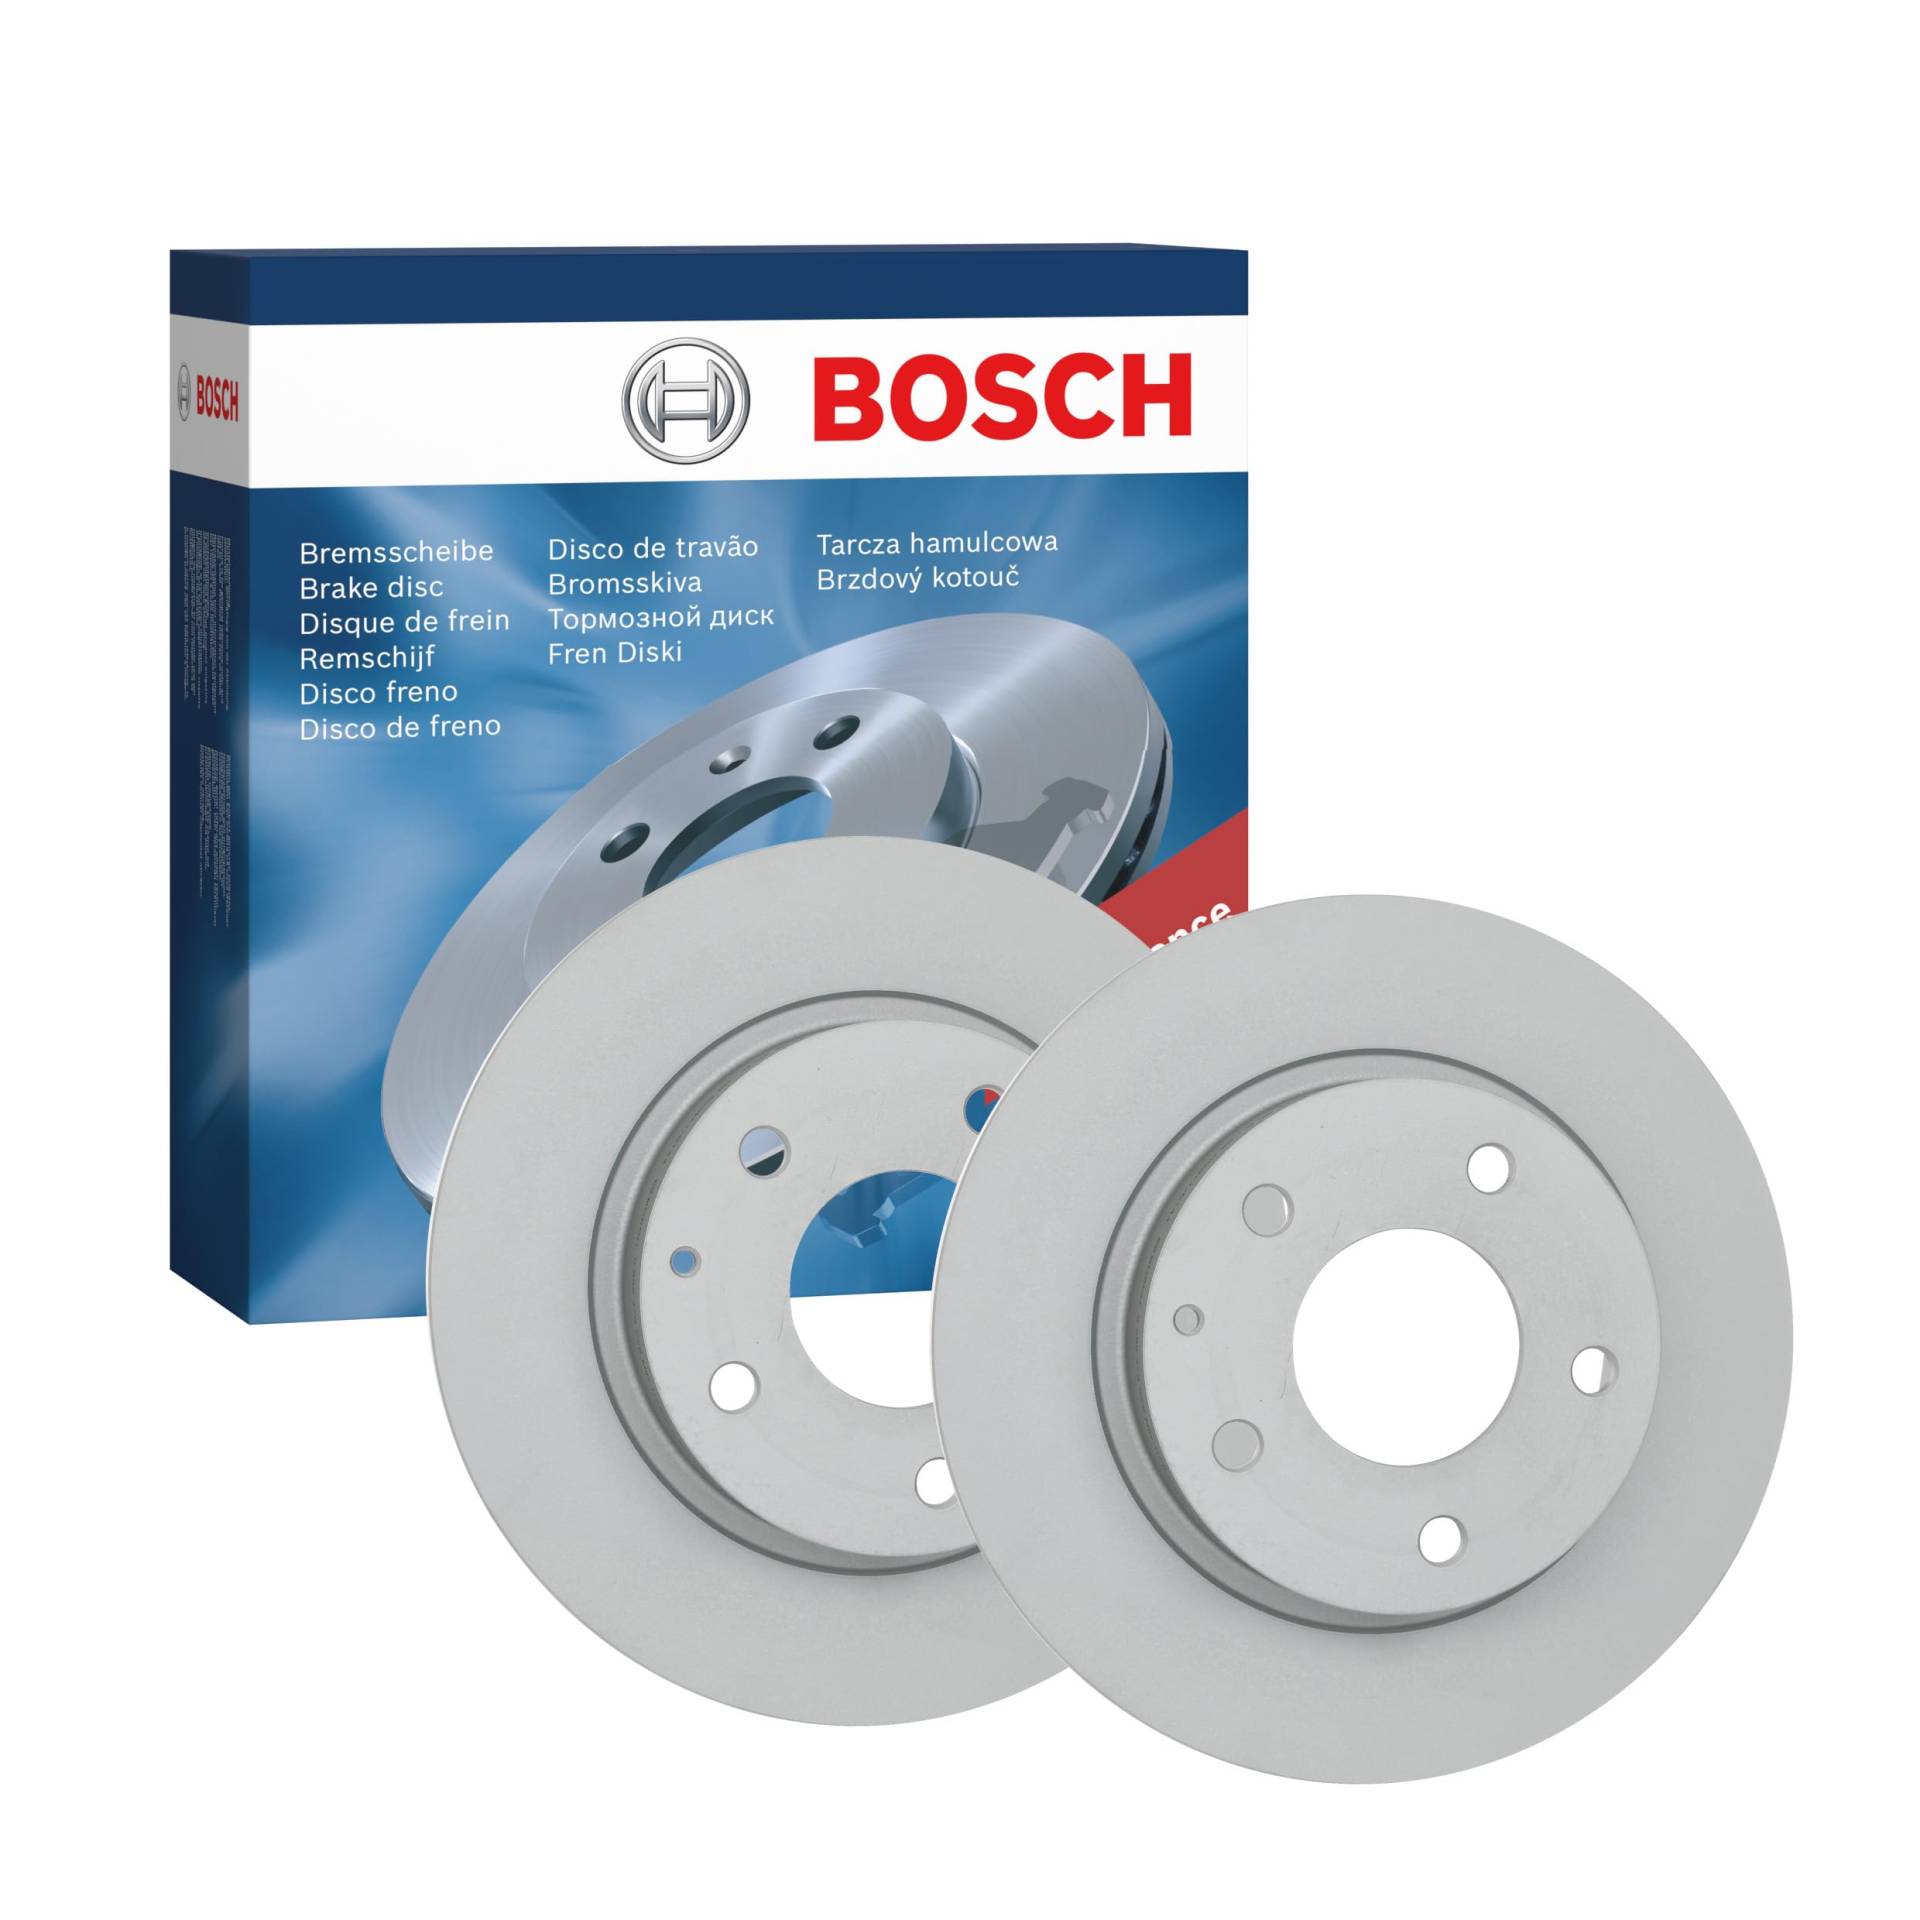 Bosch BD2165 Bremsscheiben - Hinterachse - ECE-R90 Zertifizierung - zwei Bremsscheiben pro Set von Bosch Automotive